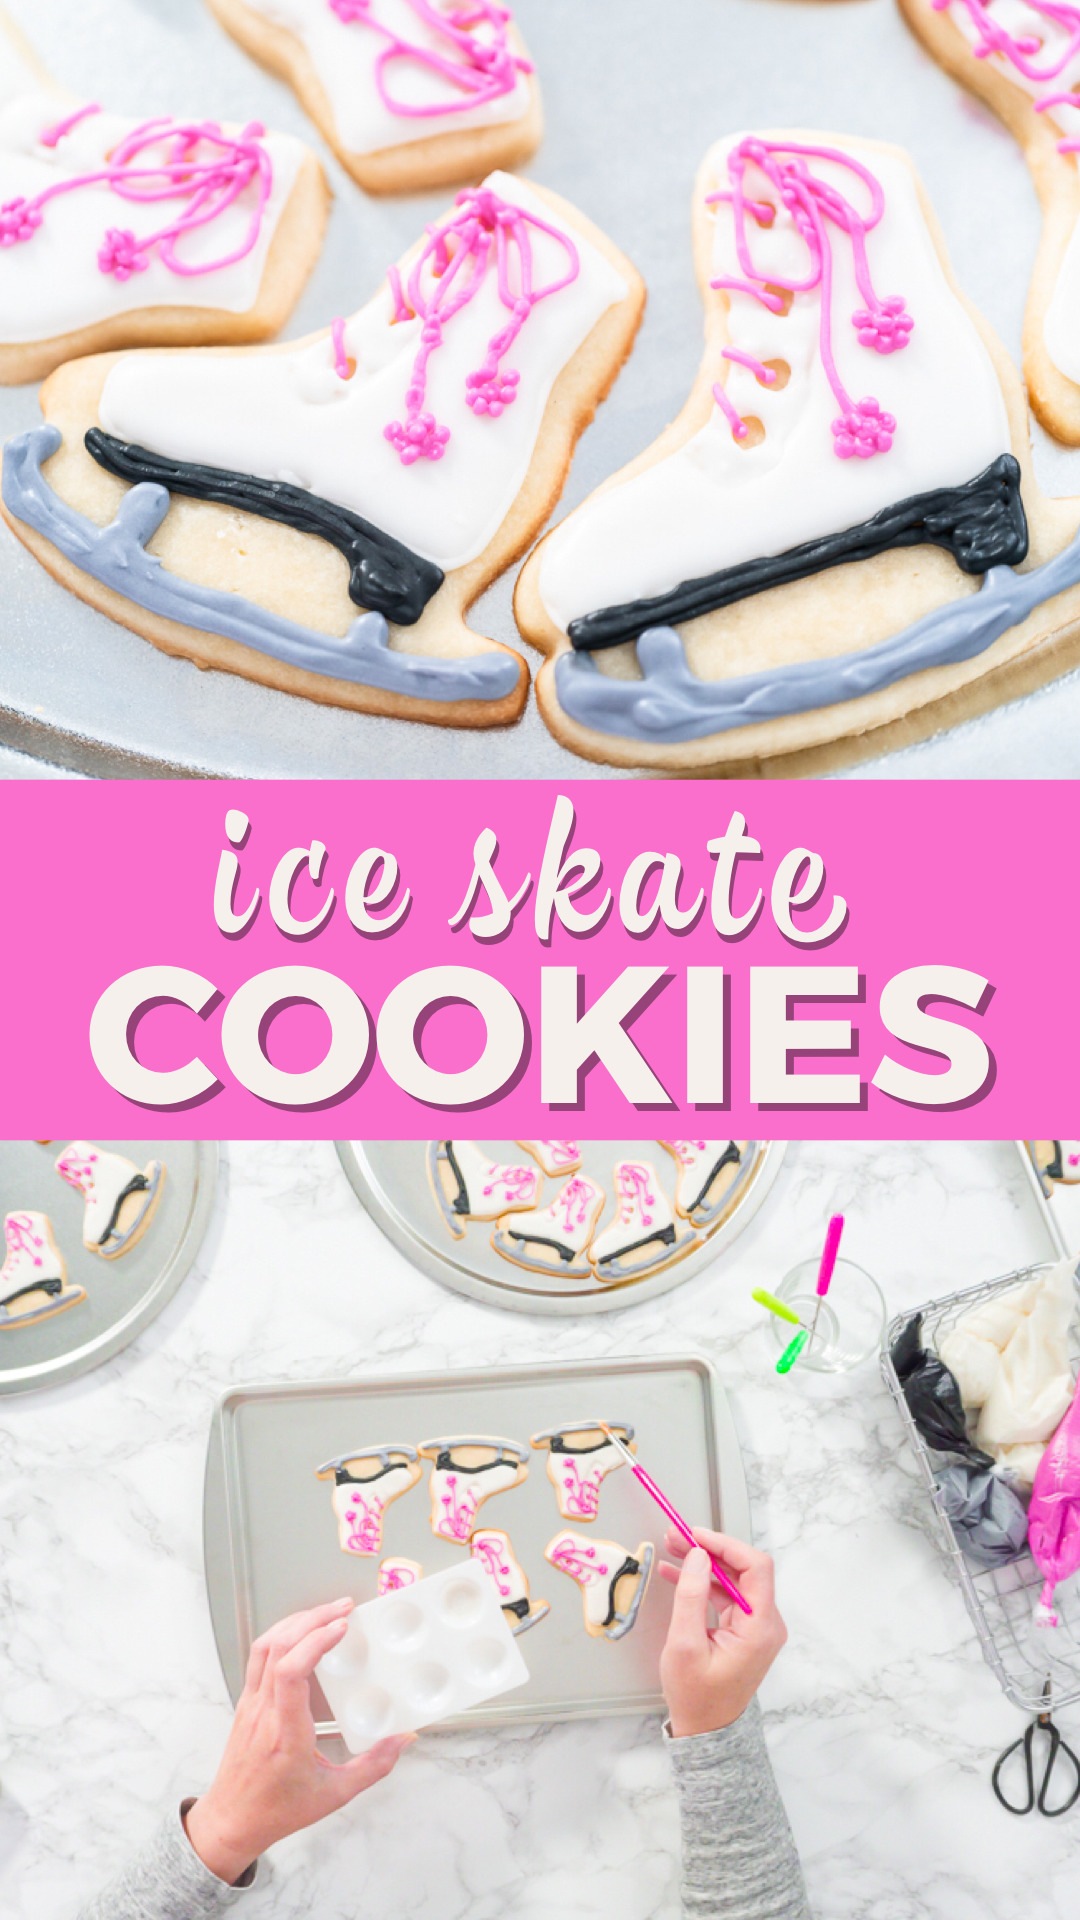 Ice skate cookies